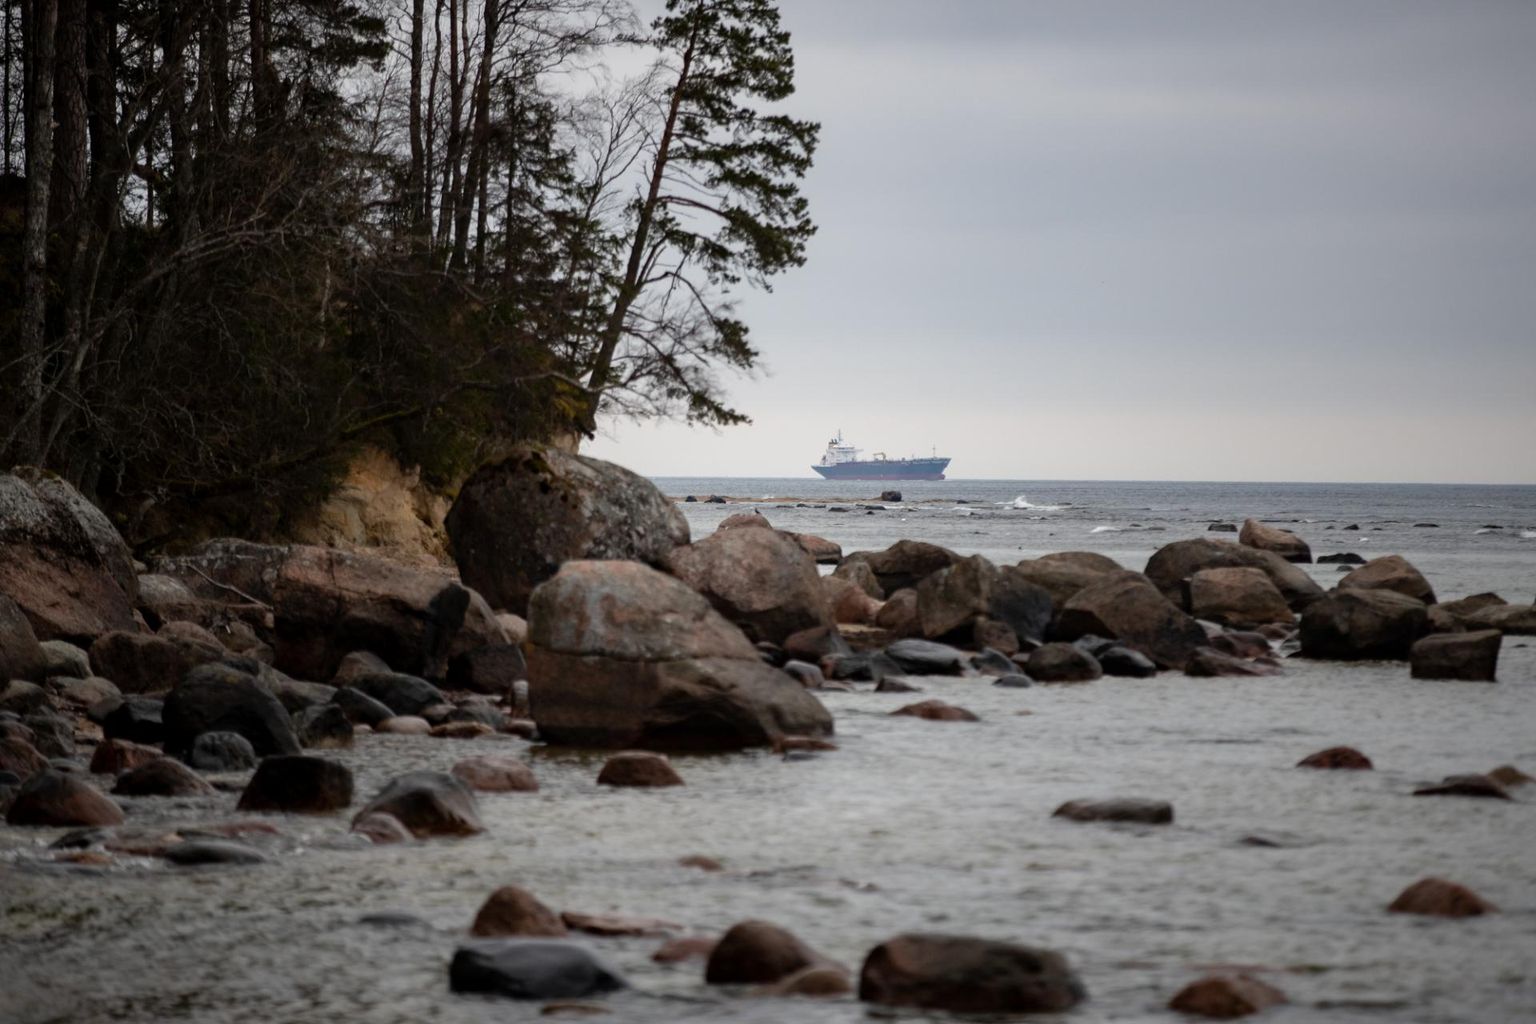 Muraste looduskaitseala rannik. Laev Seaconger suundumas Tallinna lahe G-ankrualale, kus keskkonnaministeerium plaanis vahepeal lubada STS-operatsioone.